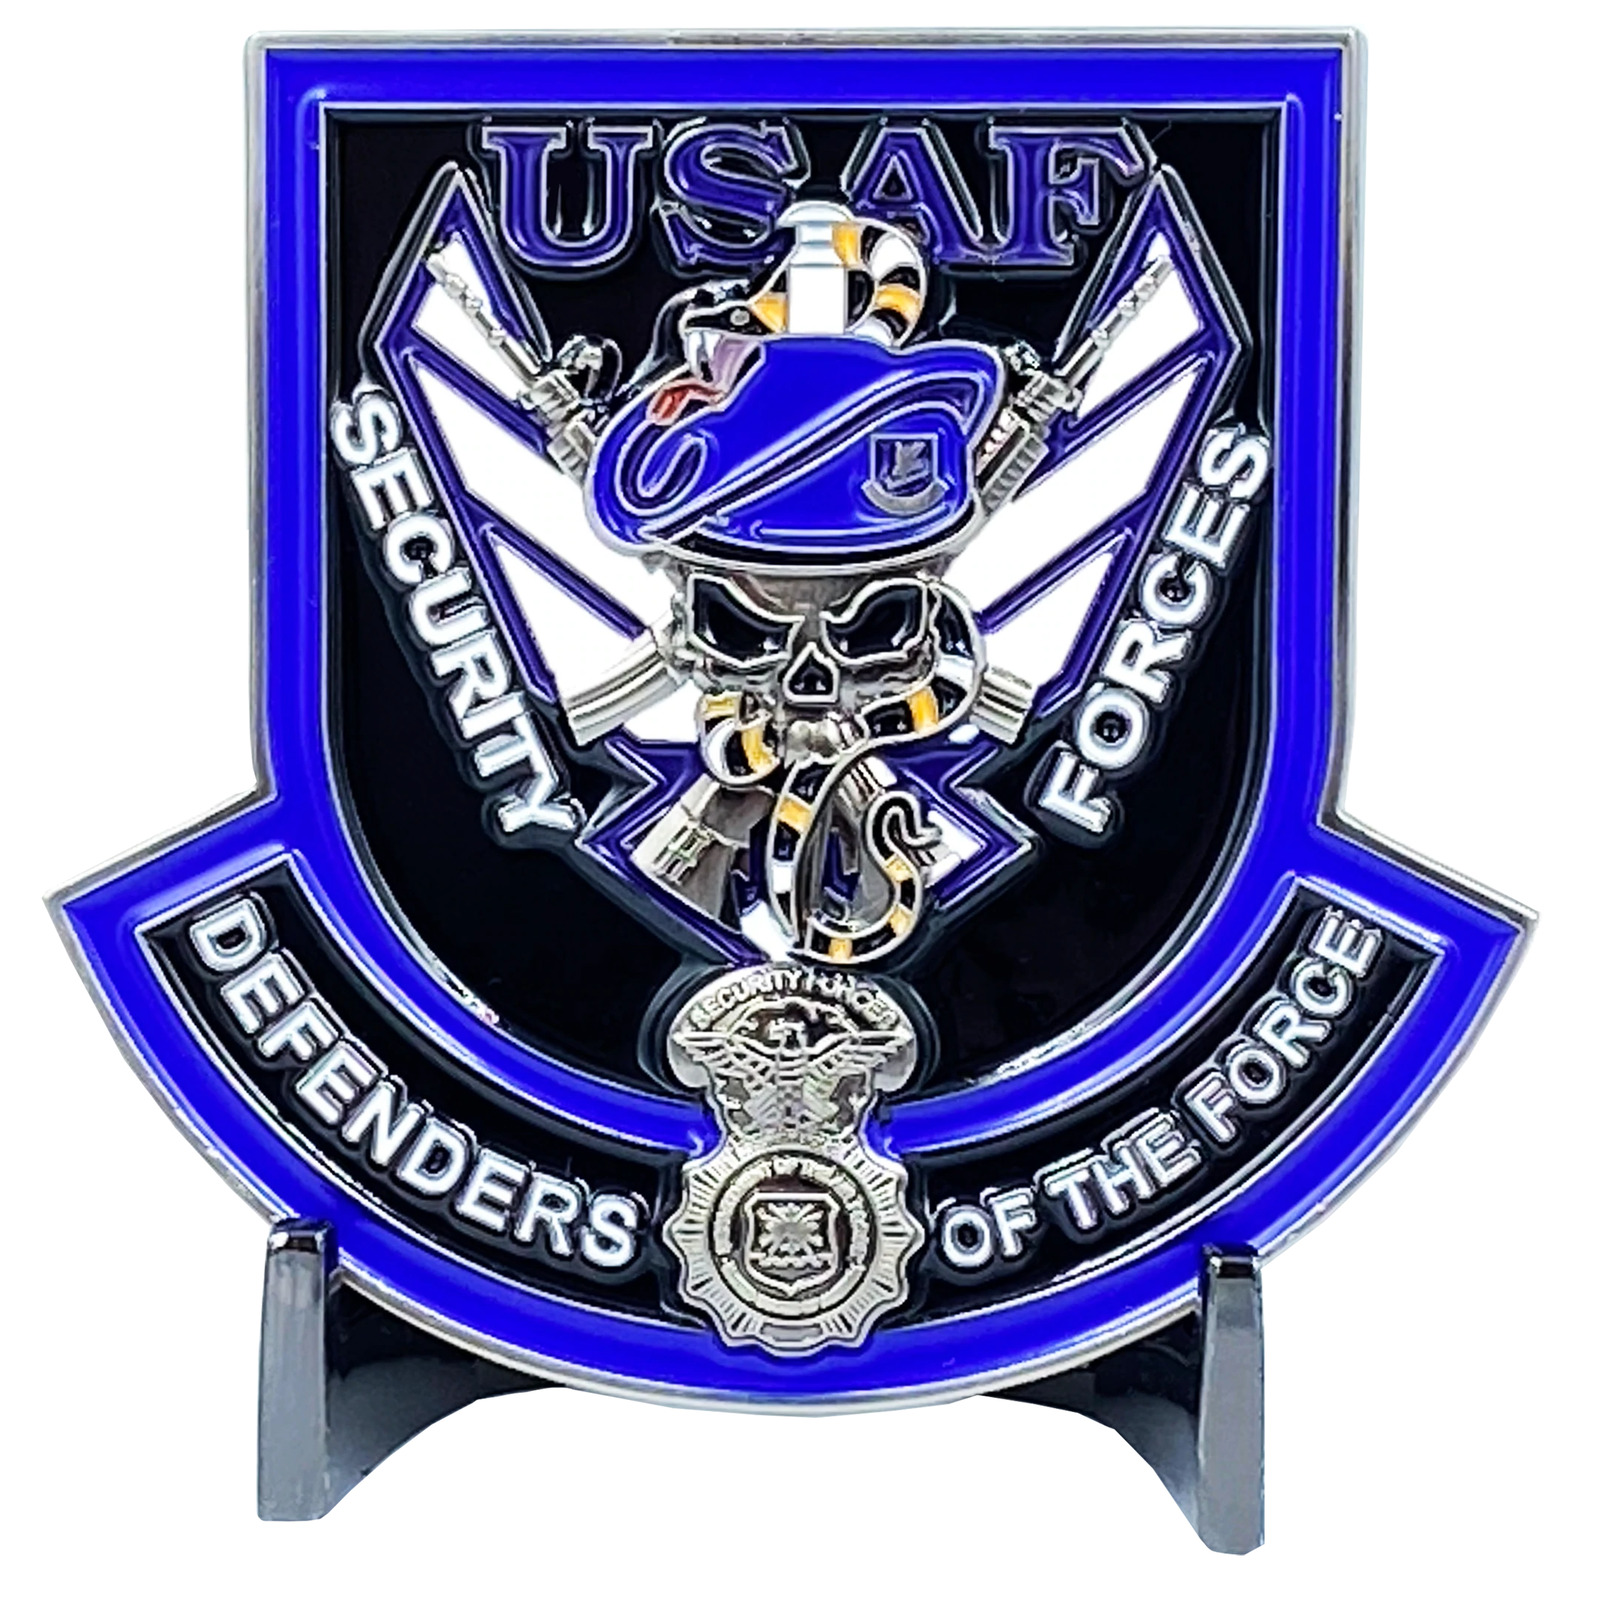 DL2-17 U.S. Air Force Security Forces Police USAF Police SP Defensor Fortis Chal